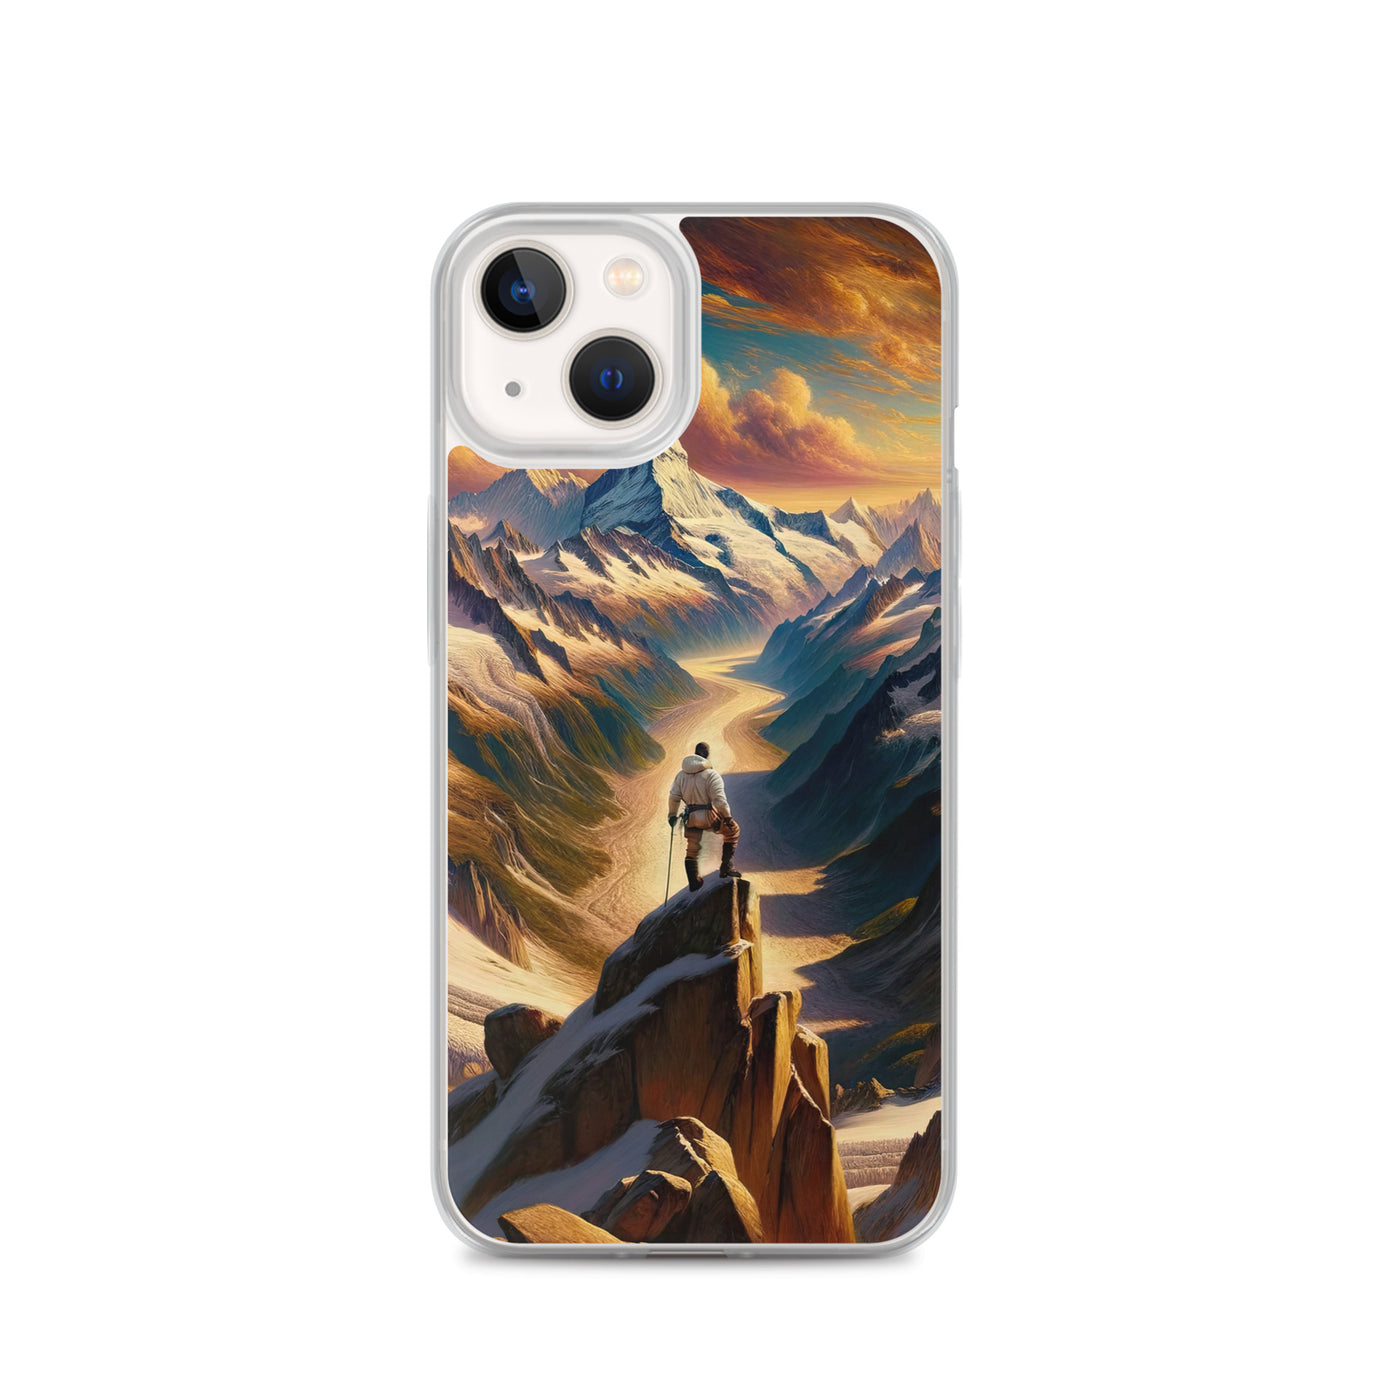 Ölgemälde eines Wanderers auf einem Hügel mit Panoramablick auf schneebedeckte Alpen und goldenen Himmel - iPhone Schutzhülle (durchsichtig) wandern xxx yyy zzz iPhone 13